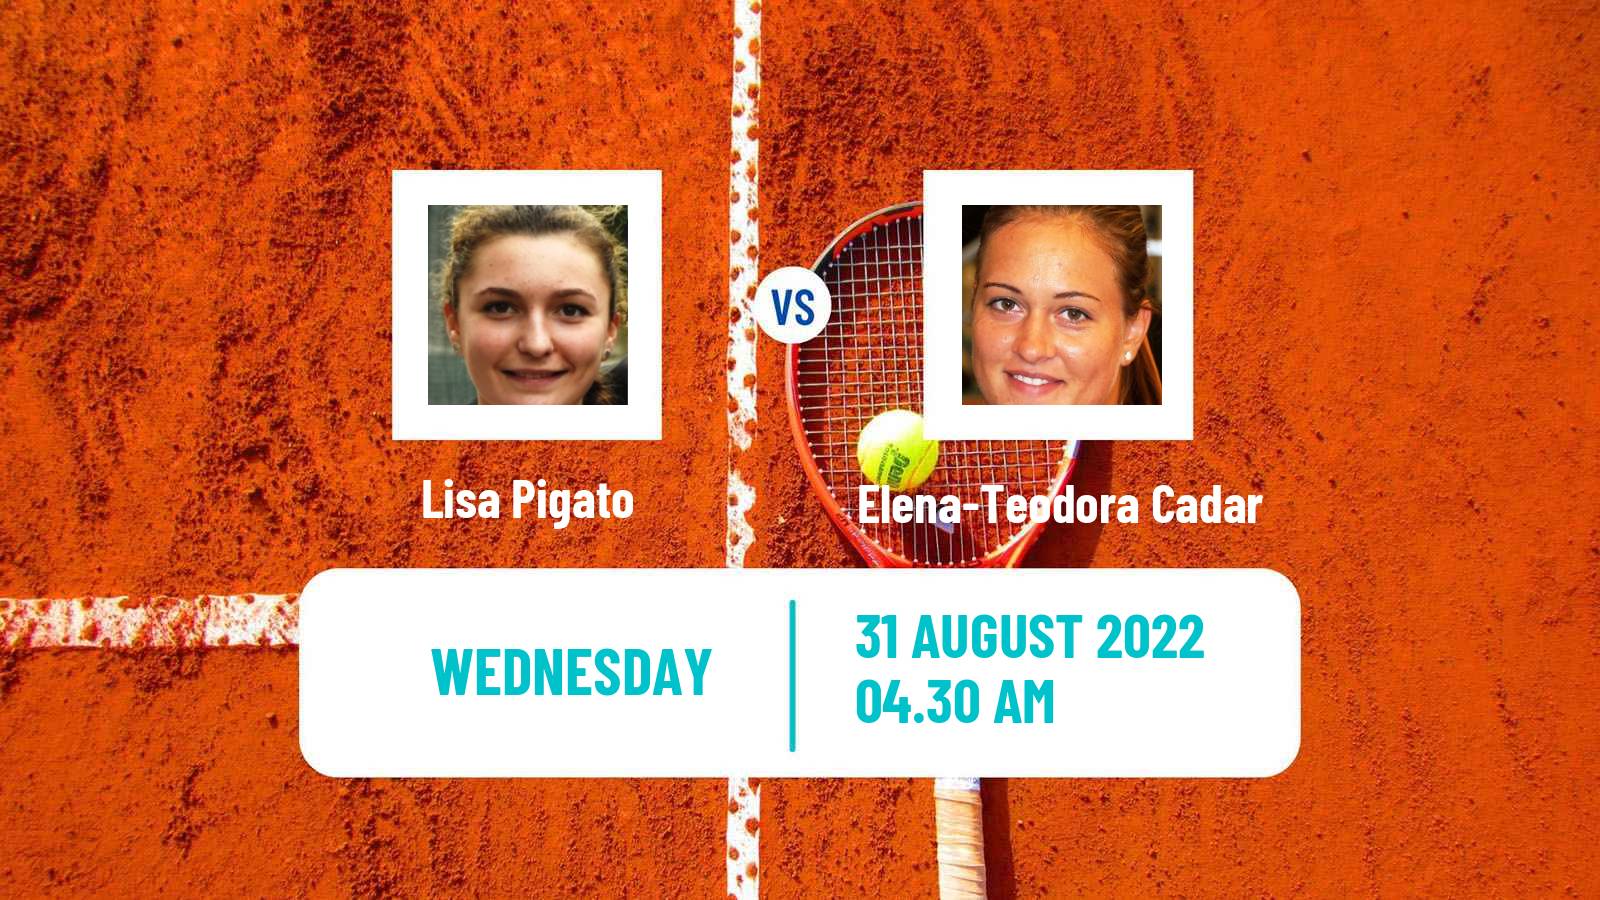 Tennis ITF Tournaments Lisa Pigato - Elena-Teodora Cadar